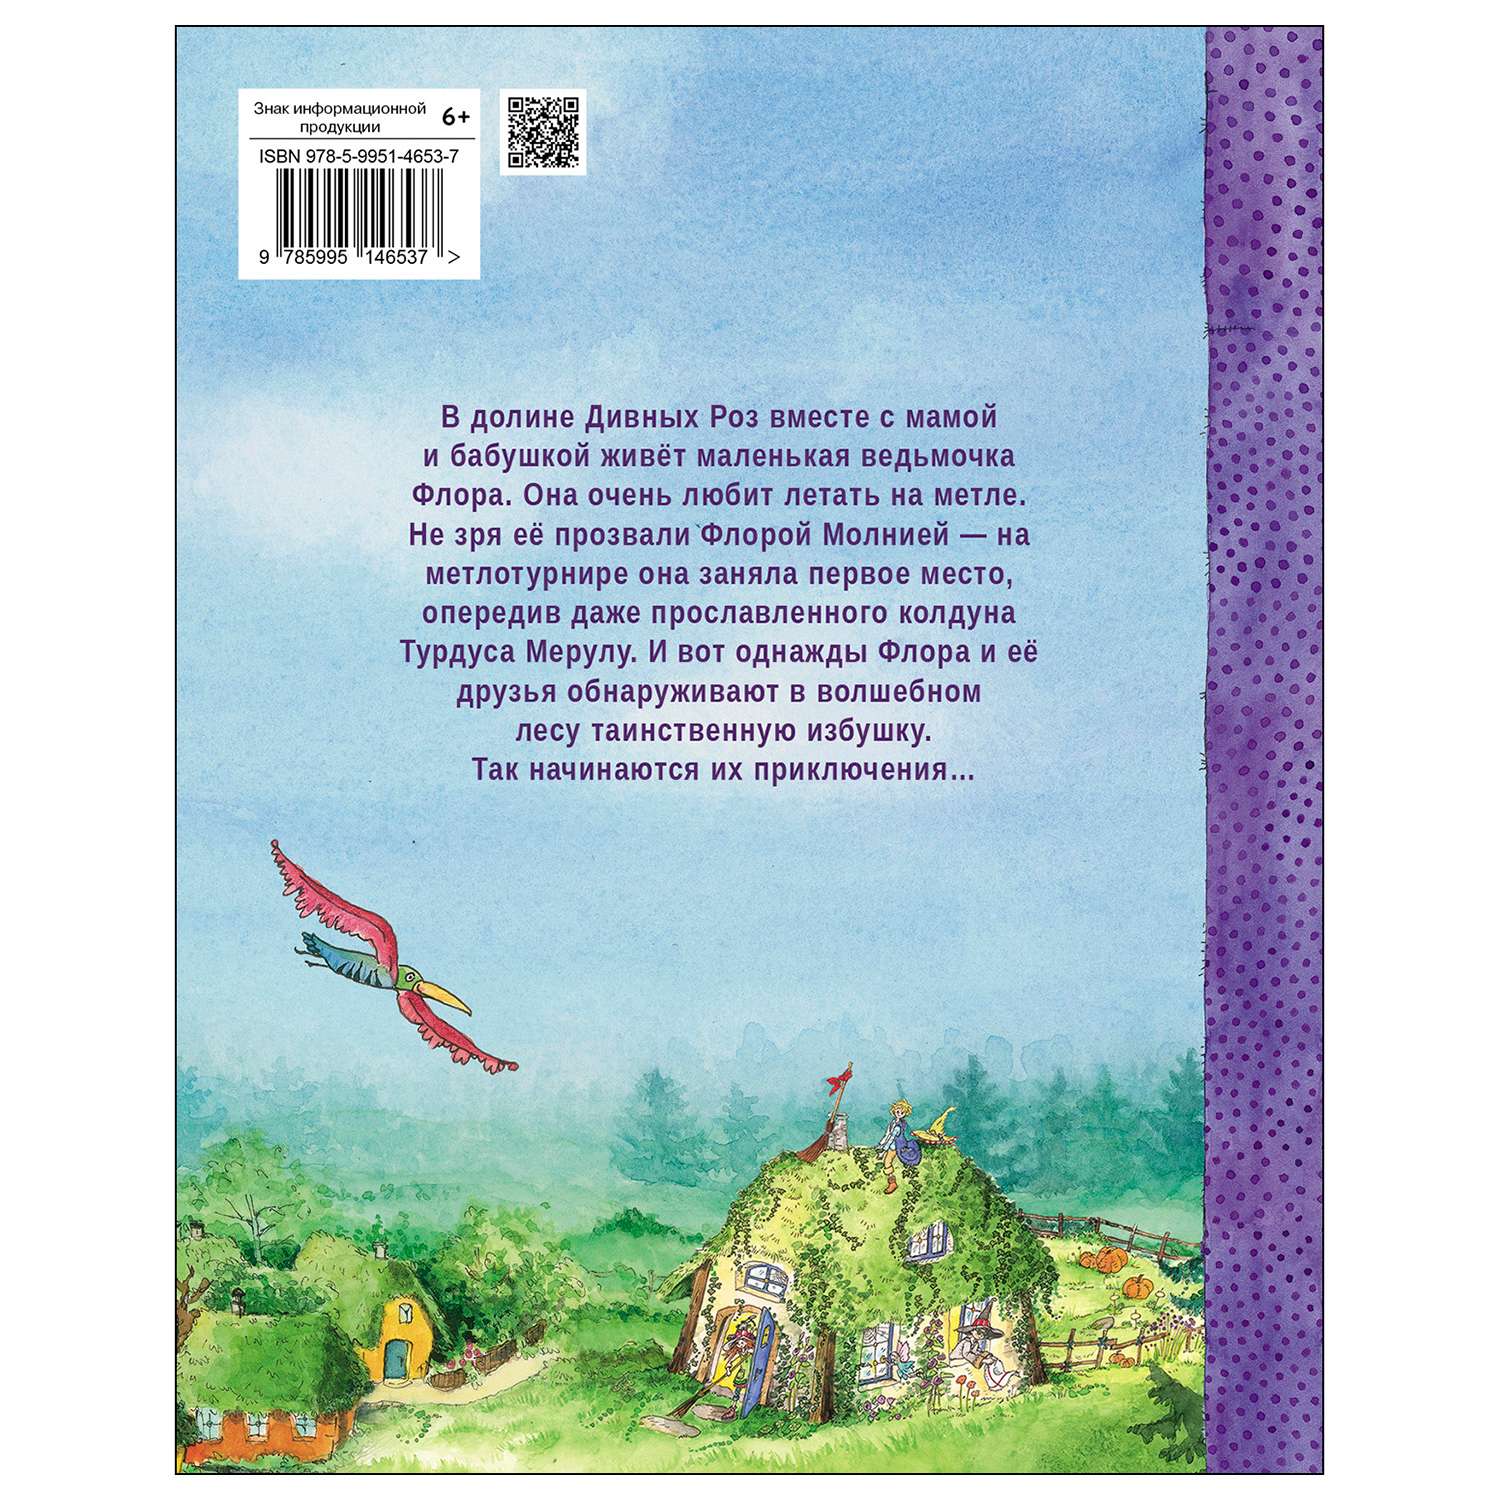 Книга СТРЕКОЗА Маленькая ведьмочка Флора Секрет волшебного леса - фото 6